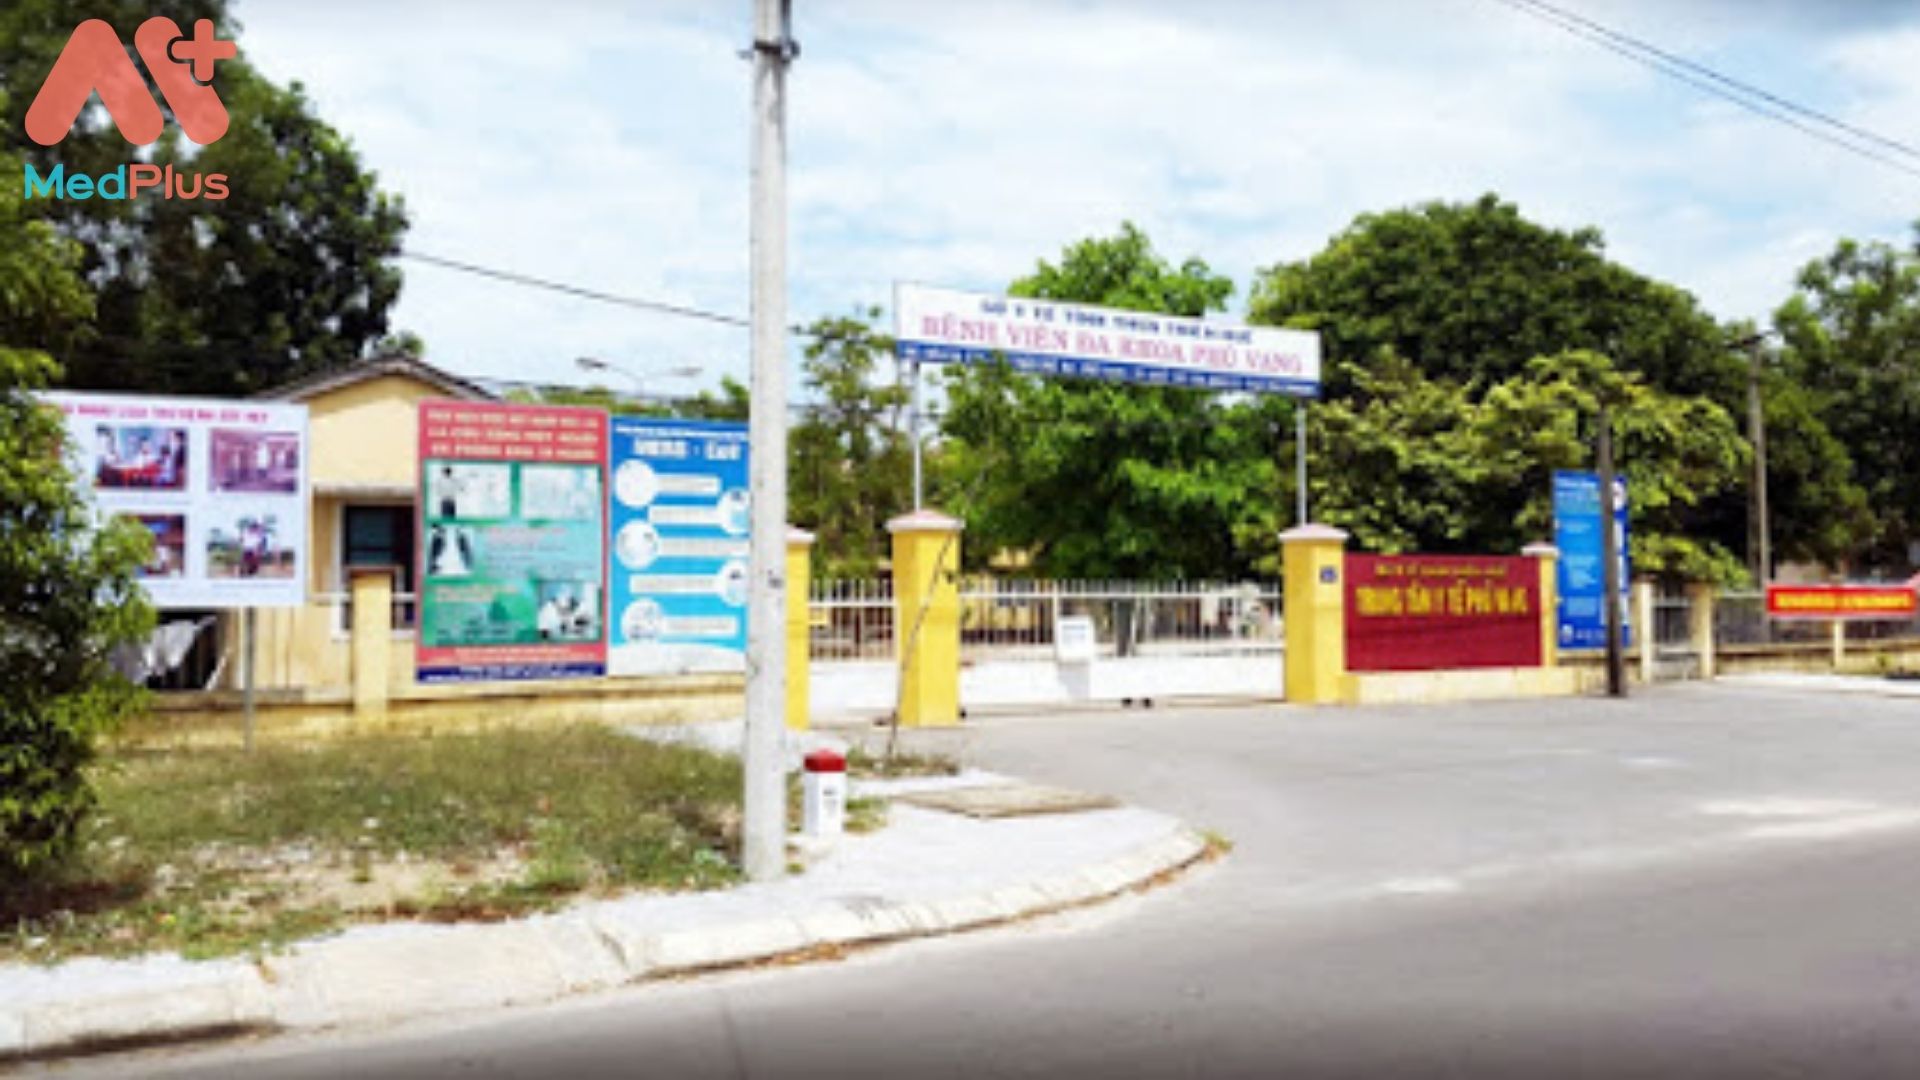 Đôi nét về Trung tâm Y tế huyện Phú Vang - Huế - Medplus.vn